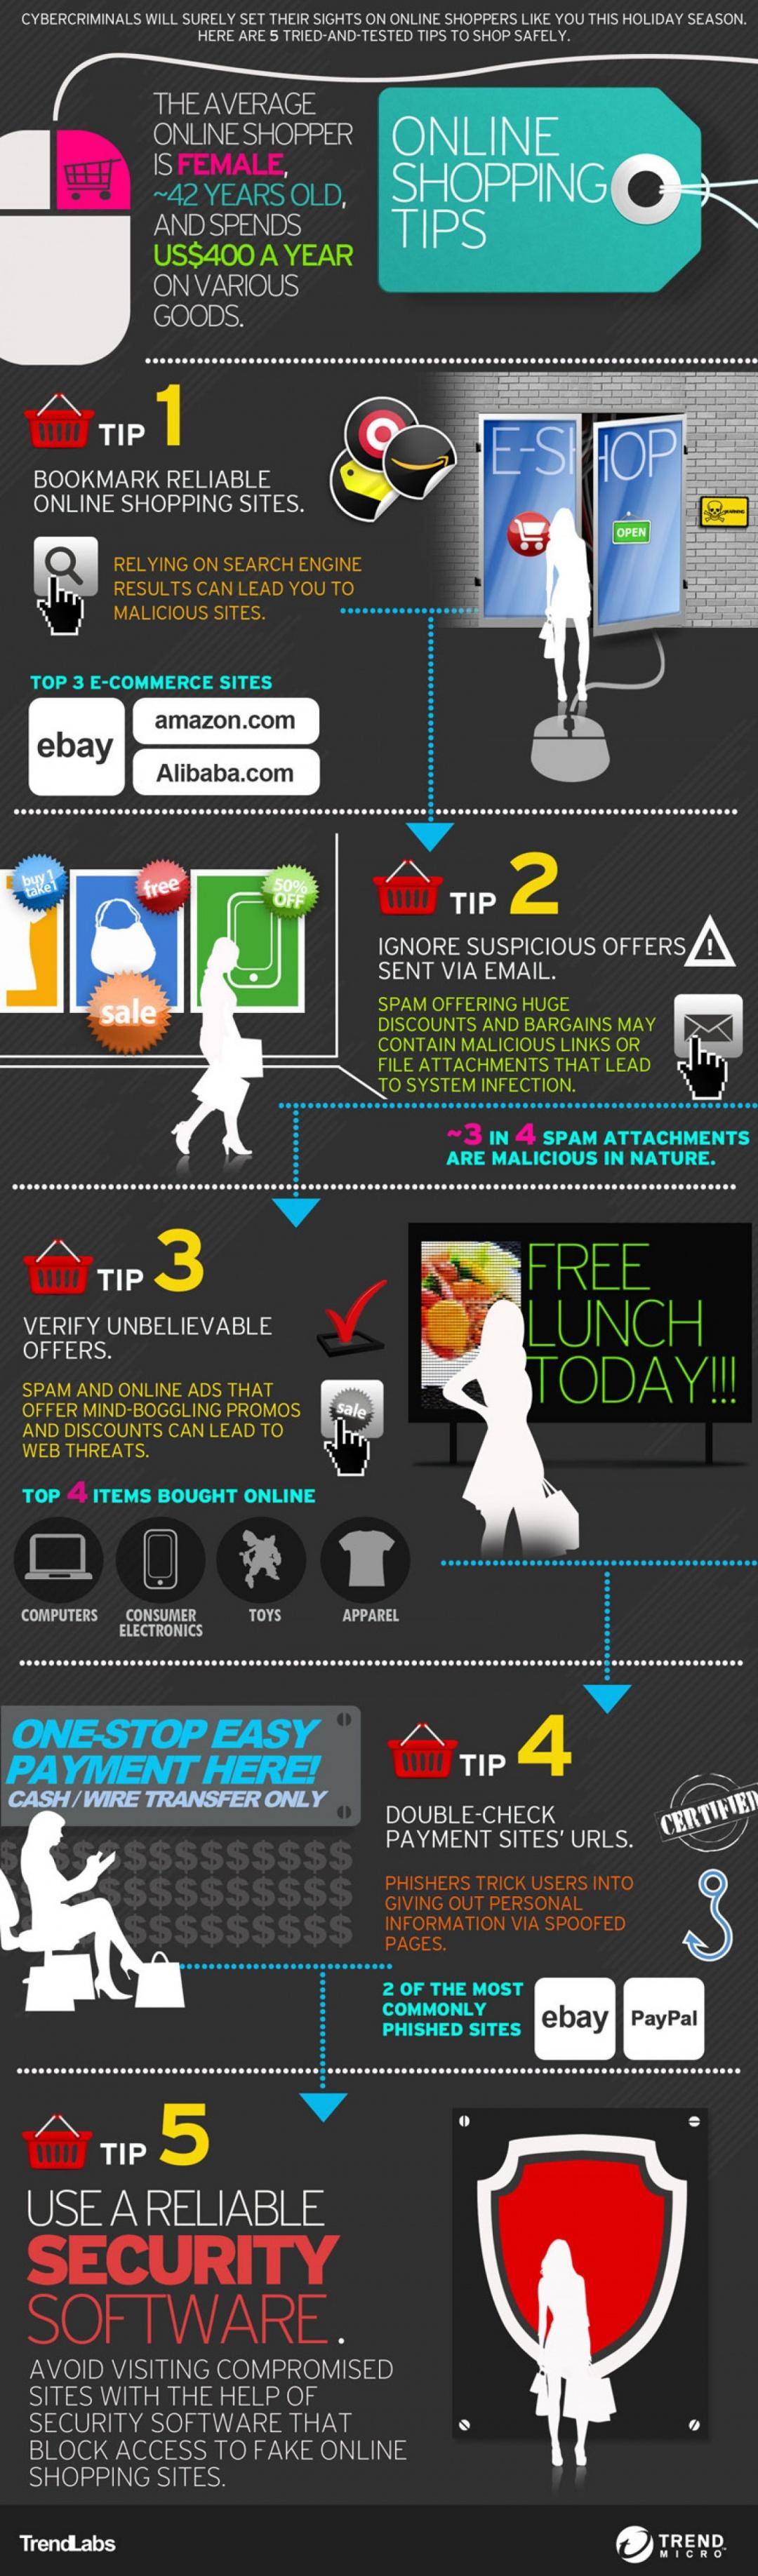 Online Shopping Tips